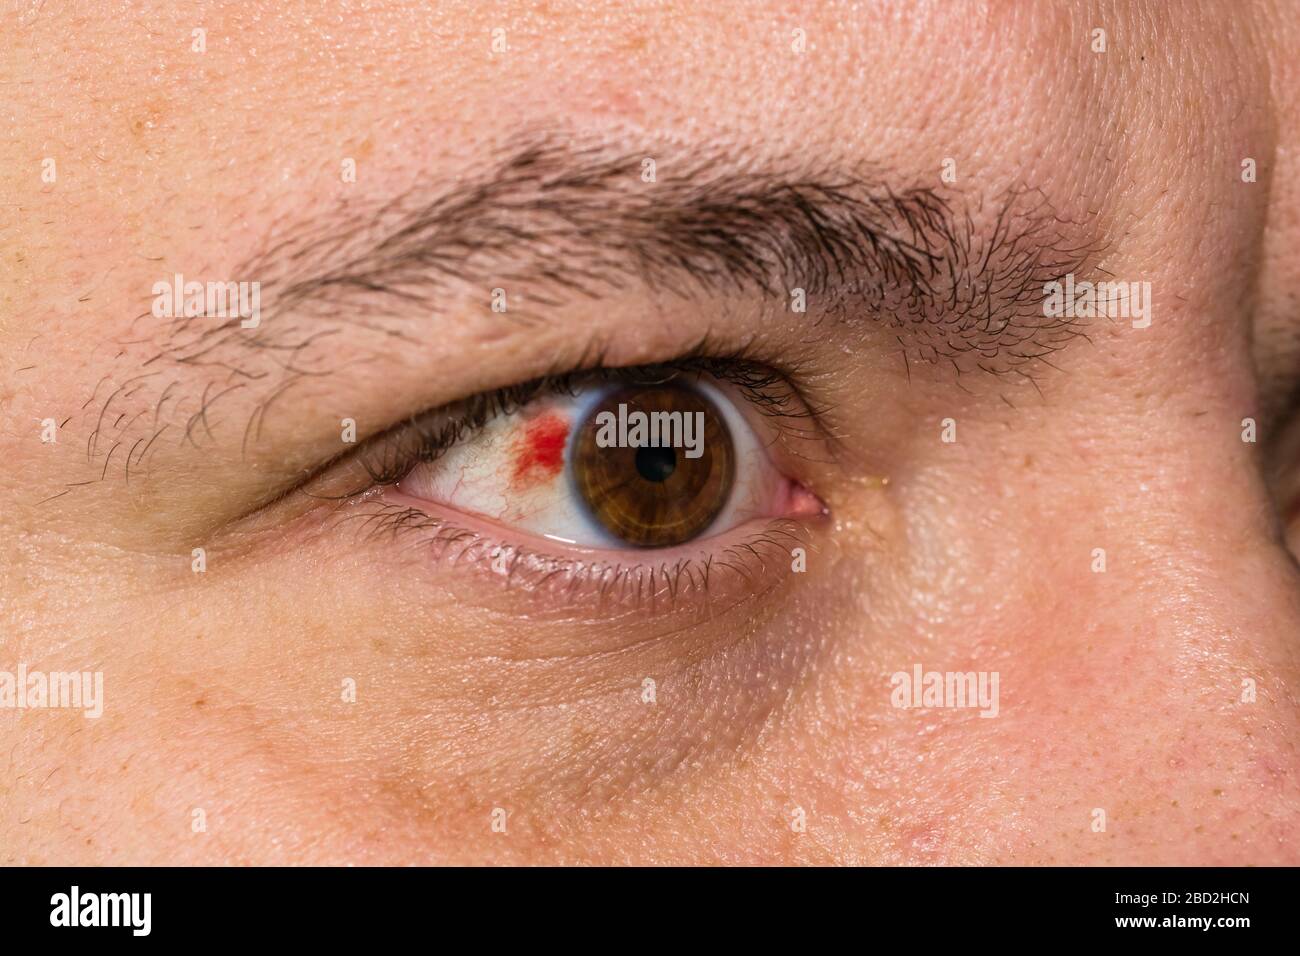 burst blood vessel in eye